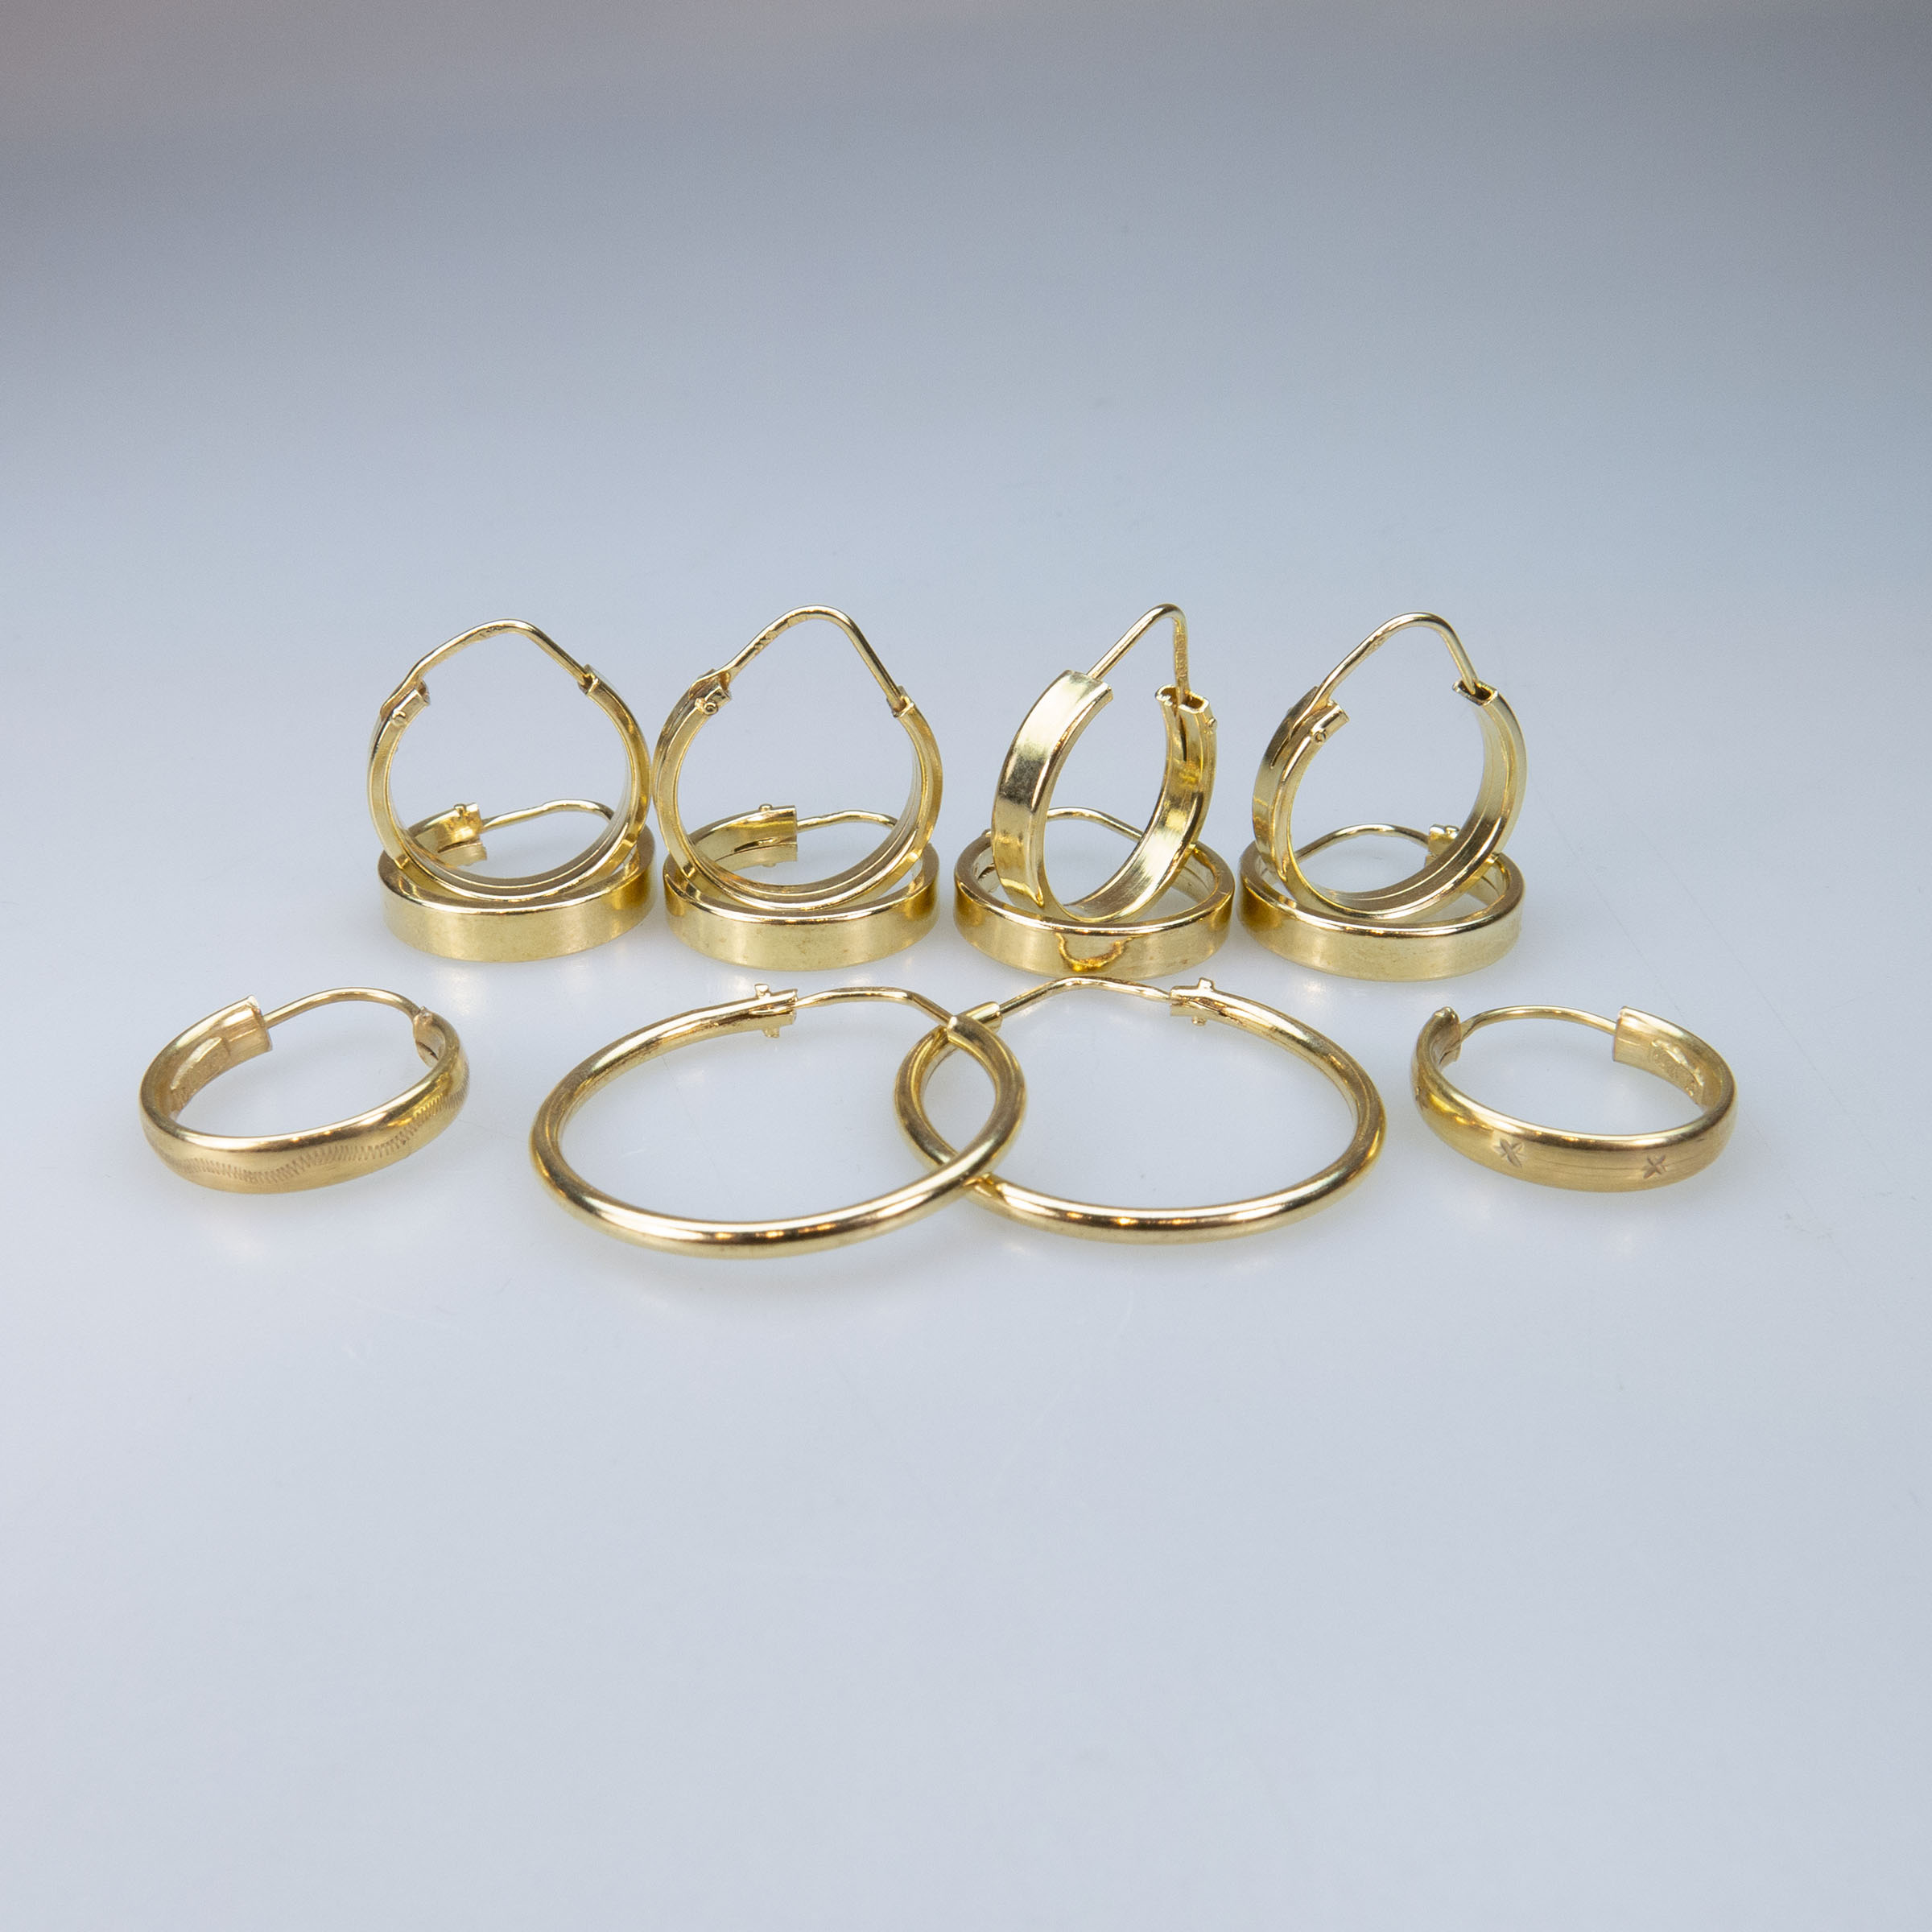 6 x Pairs Of 18k Yellow Gold Hoop Earrings